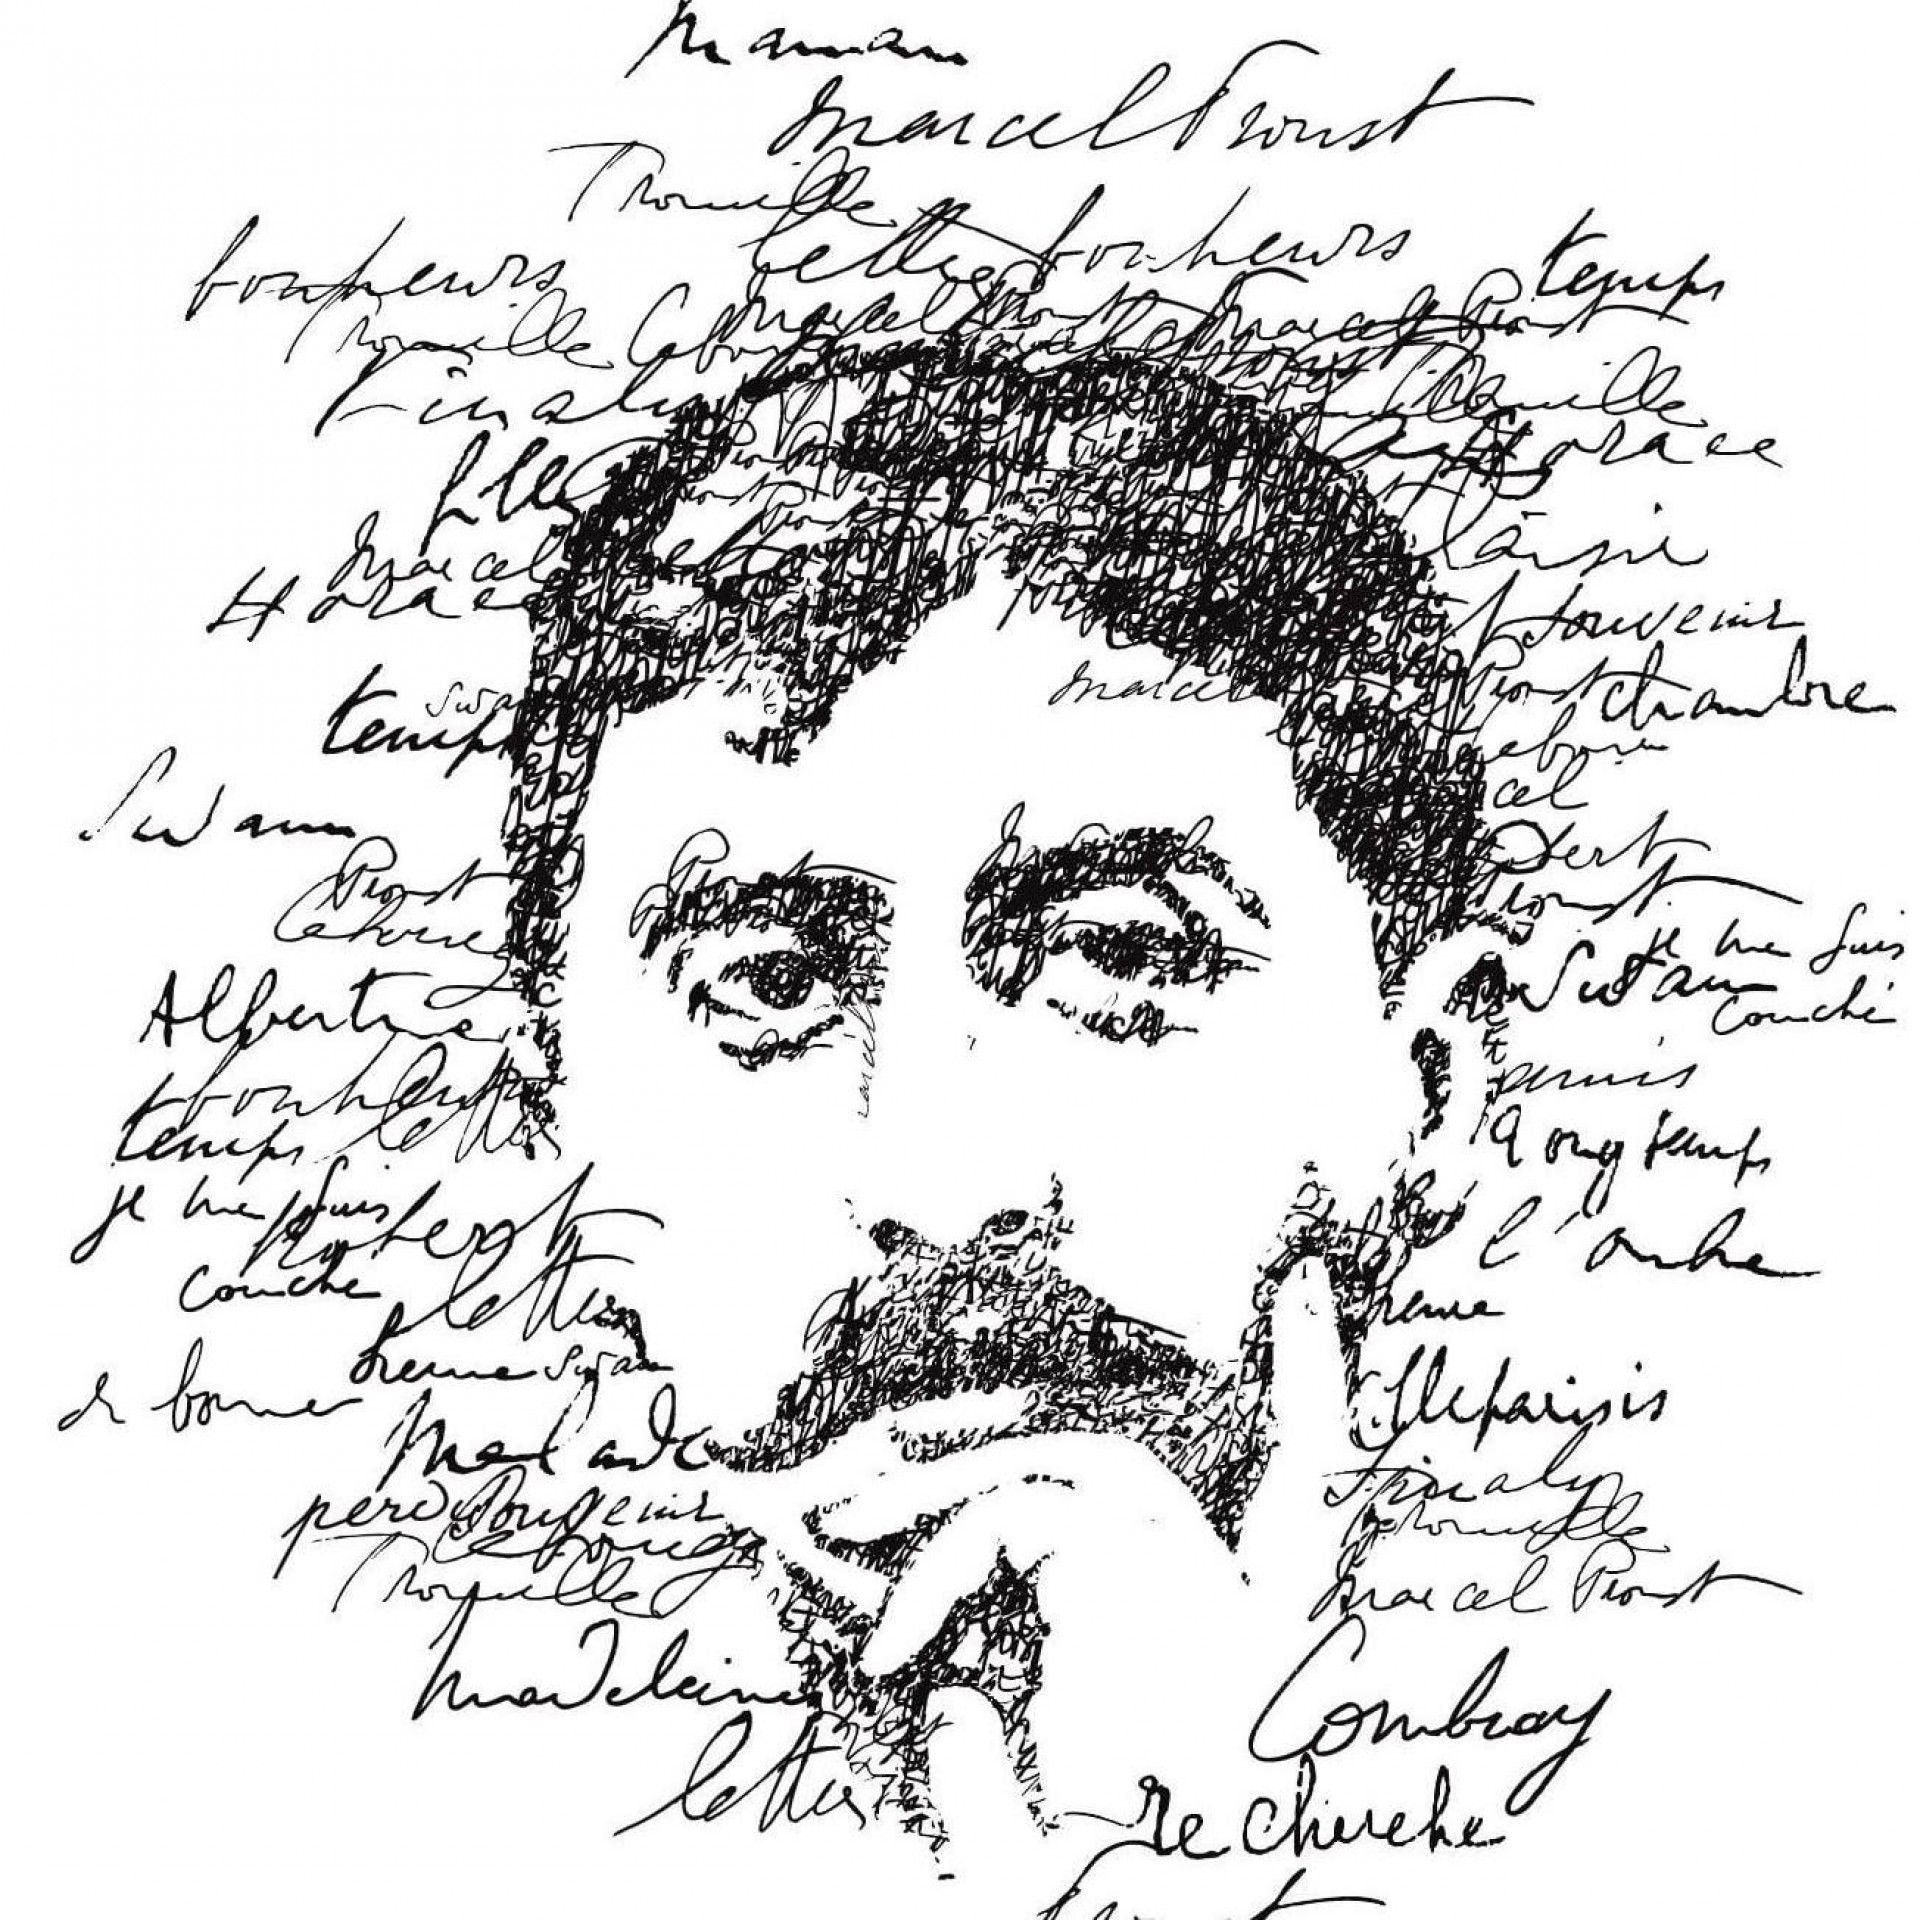 FONDAZIONE PRIMOLI - Riflessioni psicoanalitiche e letterarie sull’opera di Marcel Proust / CONFERENZA 14 Ottobre 2022 - ore 17:00